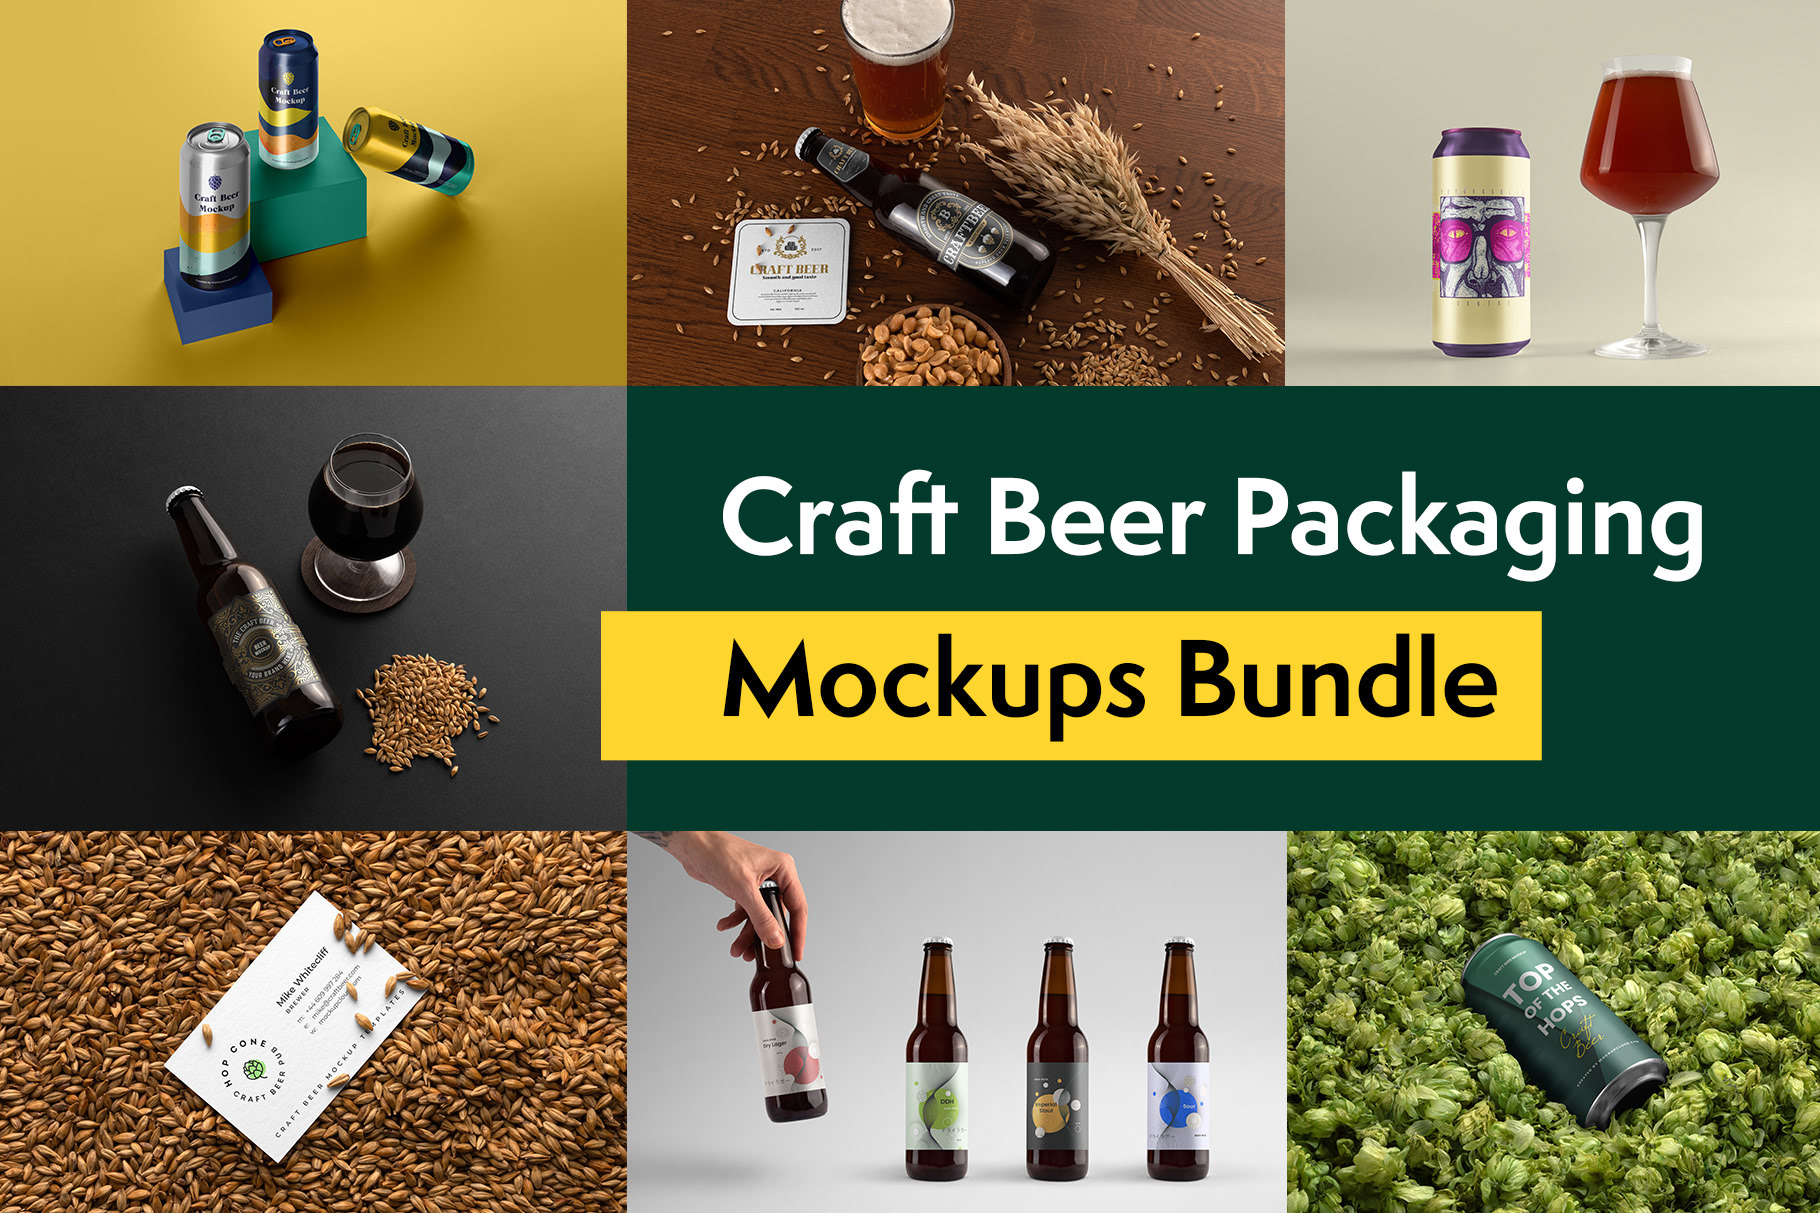 Craft Beer Packaging Mockups by Mockup Cloud